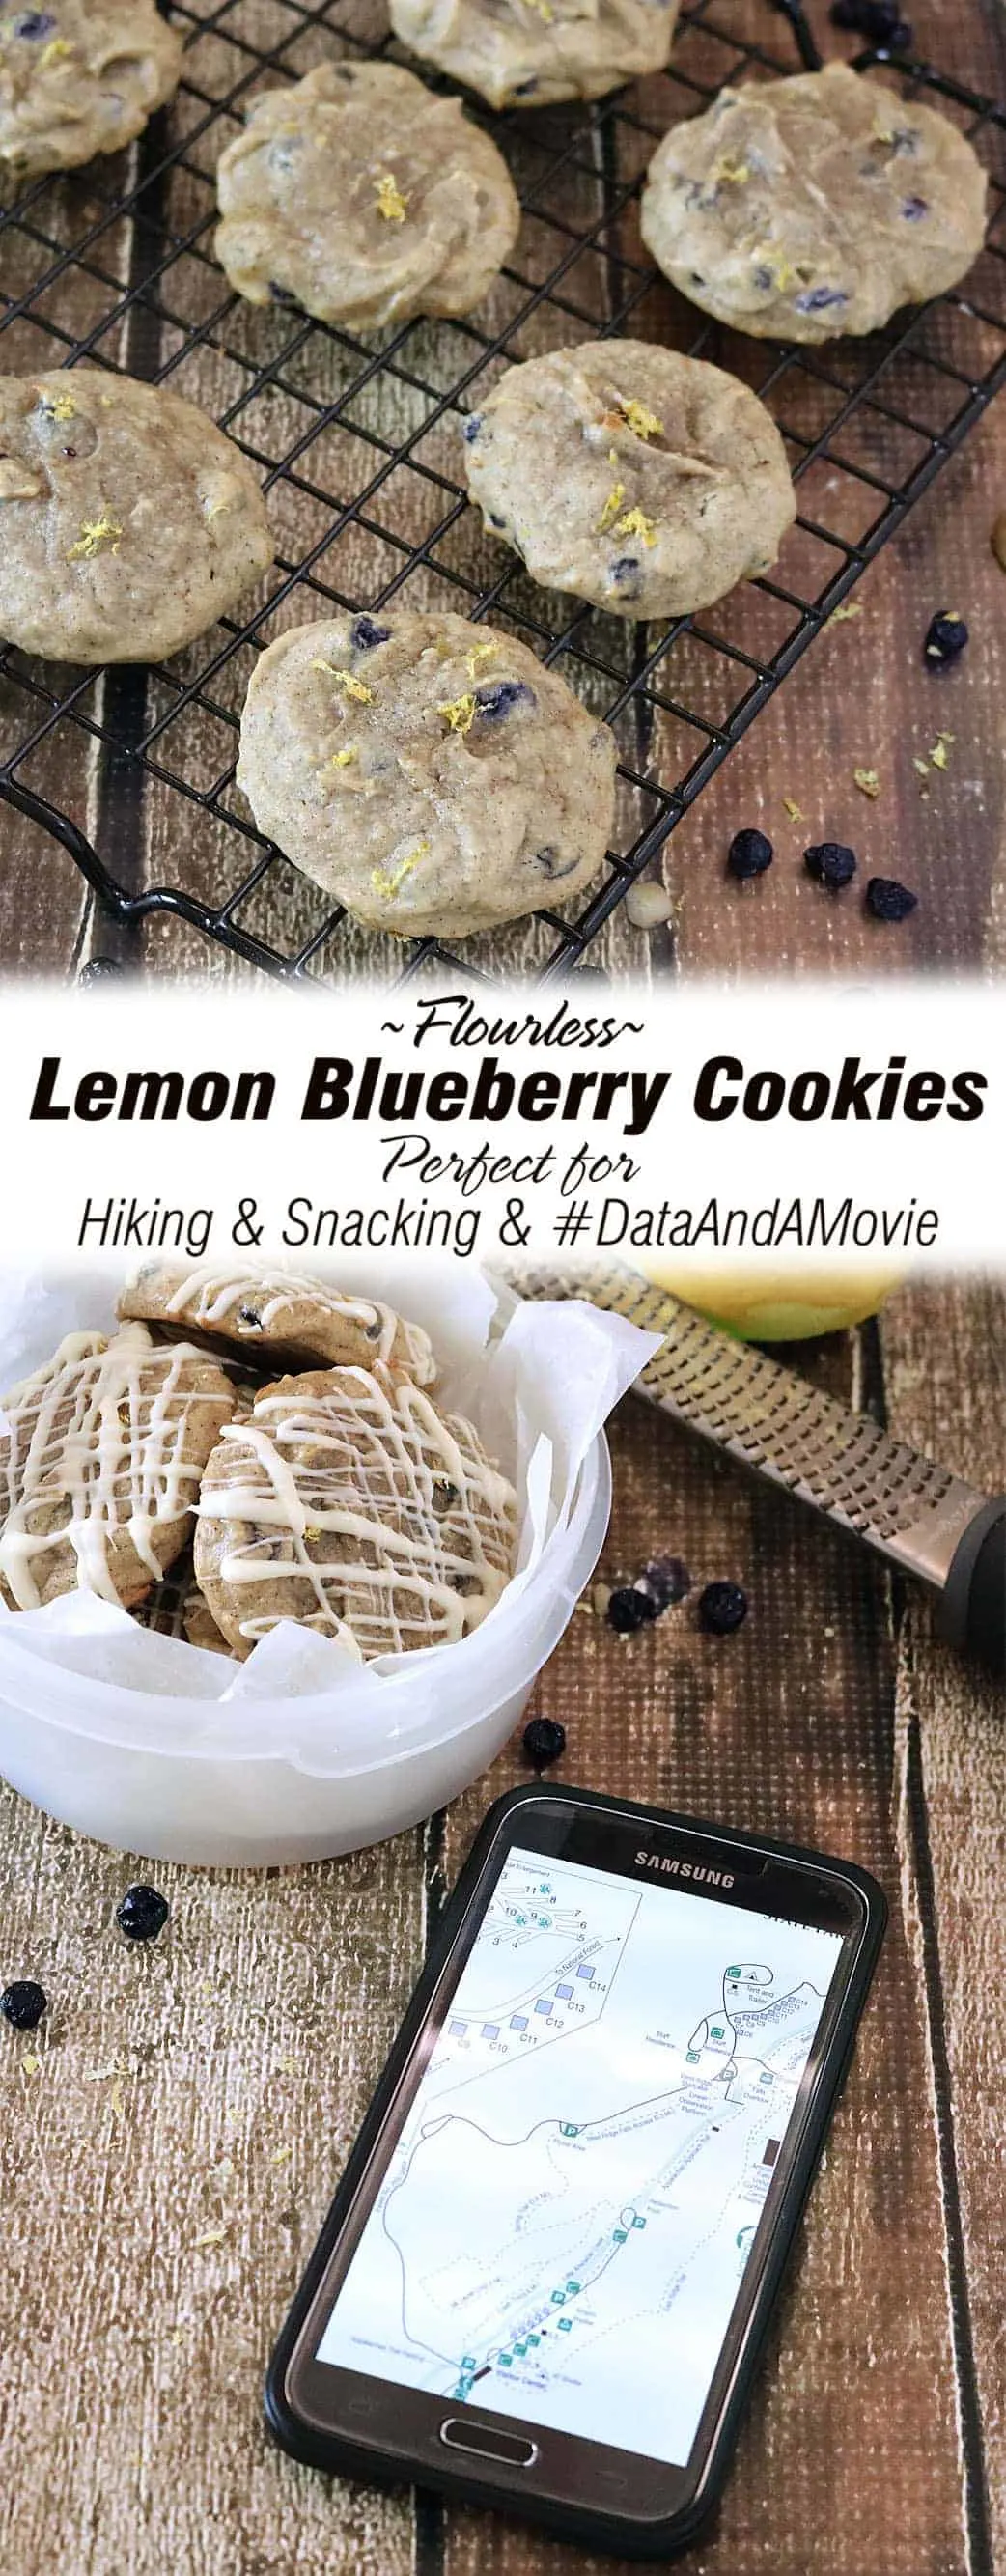 Lemon Blueberry Cookies {Flourless} #DataAndAMovie